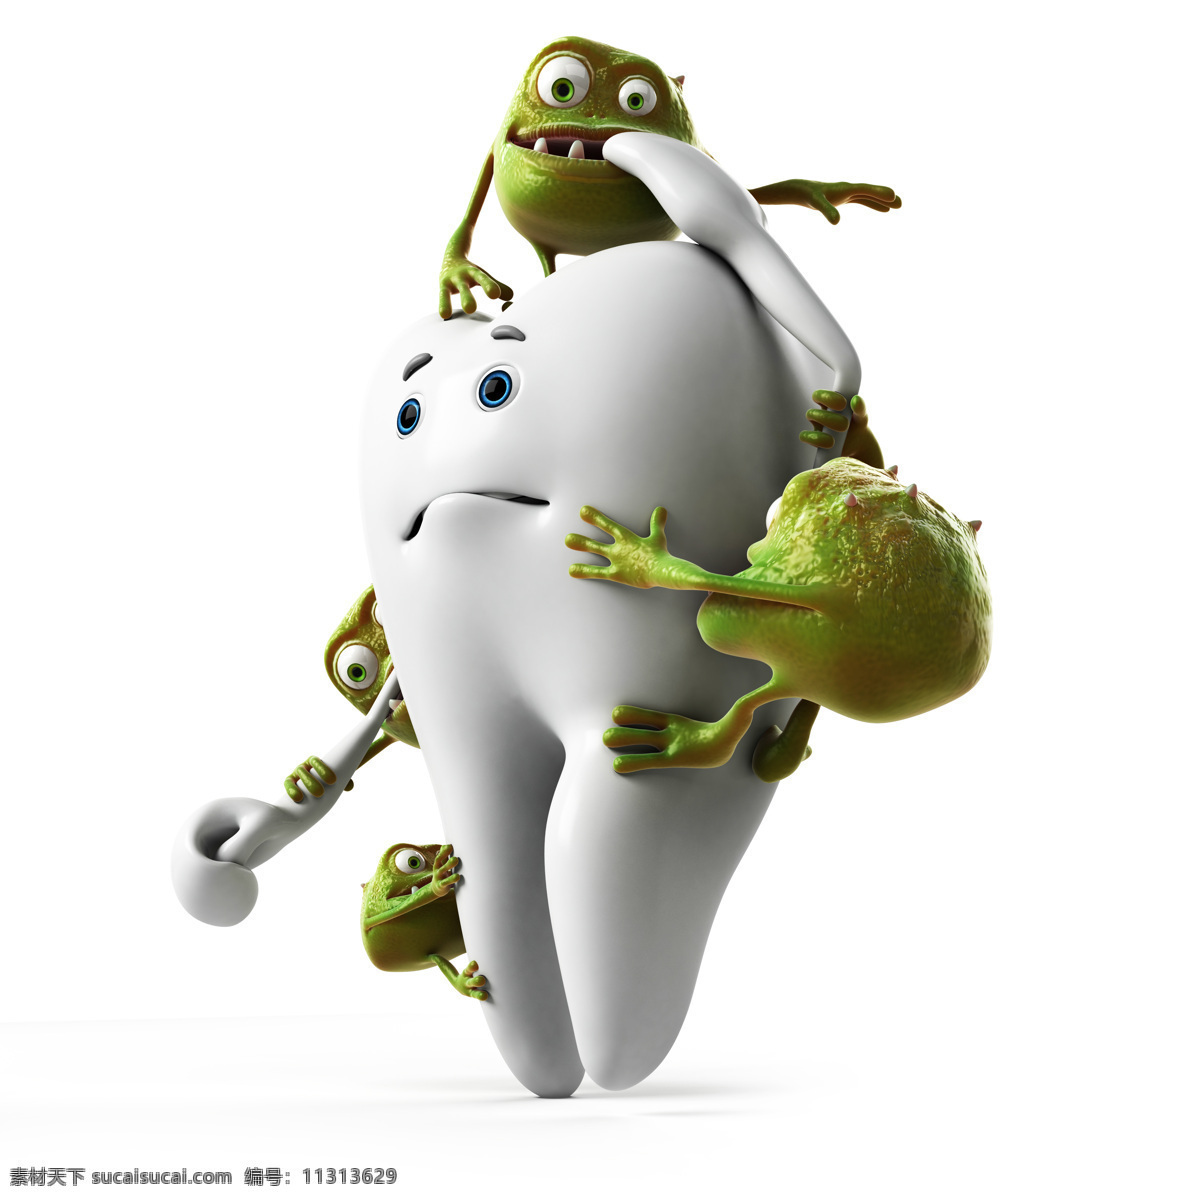 病菌 欺负 牙齿 细菌 主题 牙齿素材 牙齿图片 卡通牙齿 牙齿保健 牙科 牙齿广告 医疗保健 医疗卫生 其他类别 生活百科